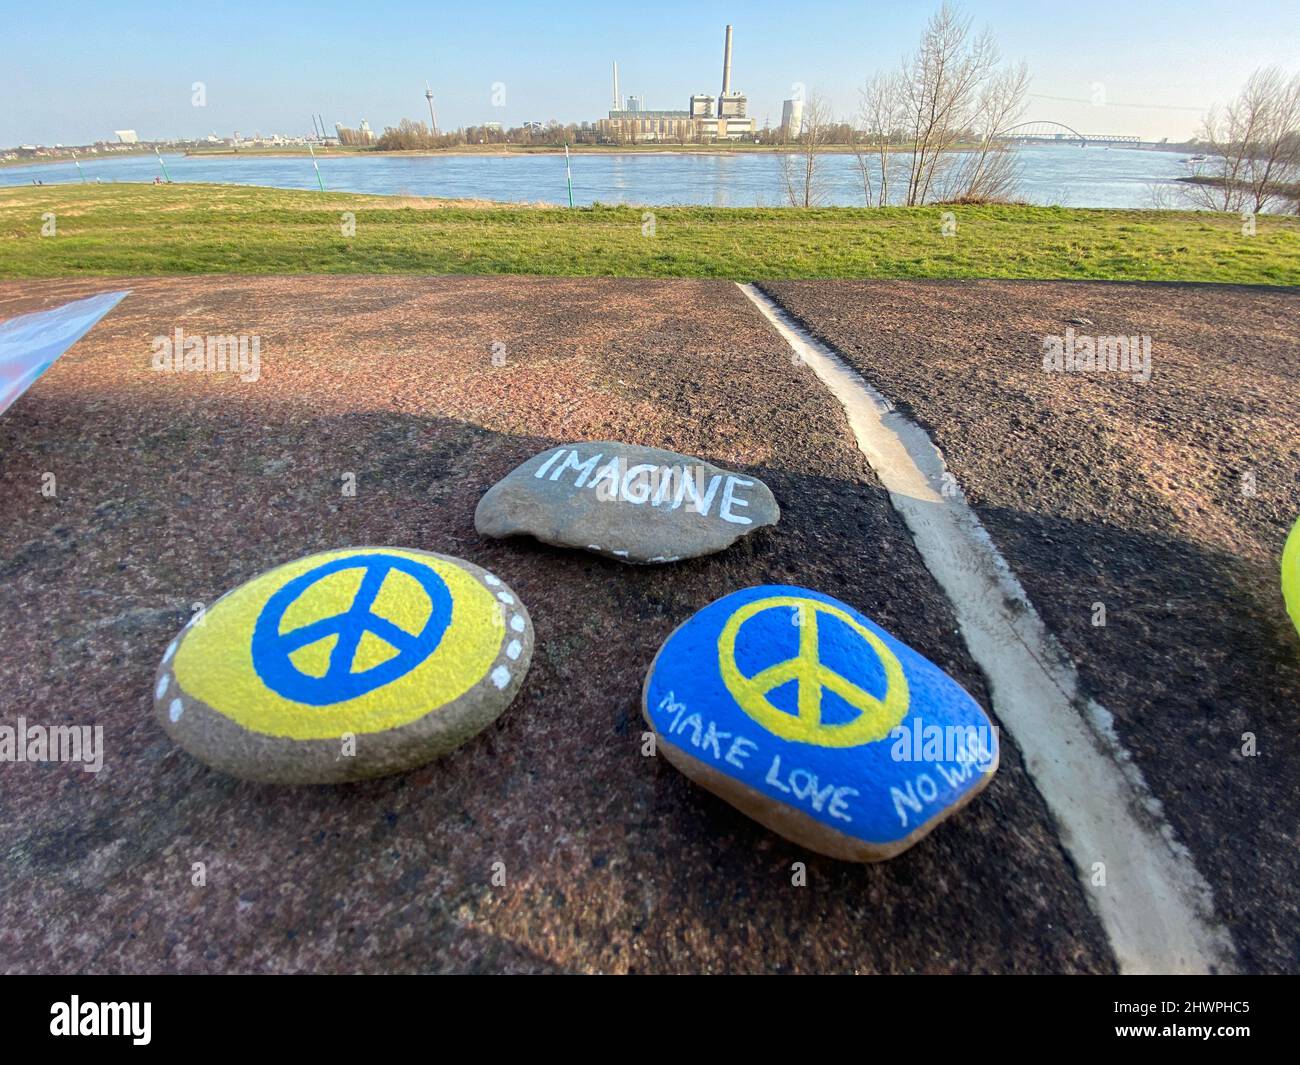 Peace steht auf den Steinen in den ukrainischen Landesfarben. Kinder haben die bemalten Steine am Rheinufer en Düsseldorf abgelegt. Foto de stock